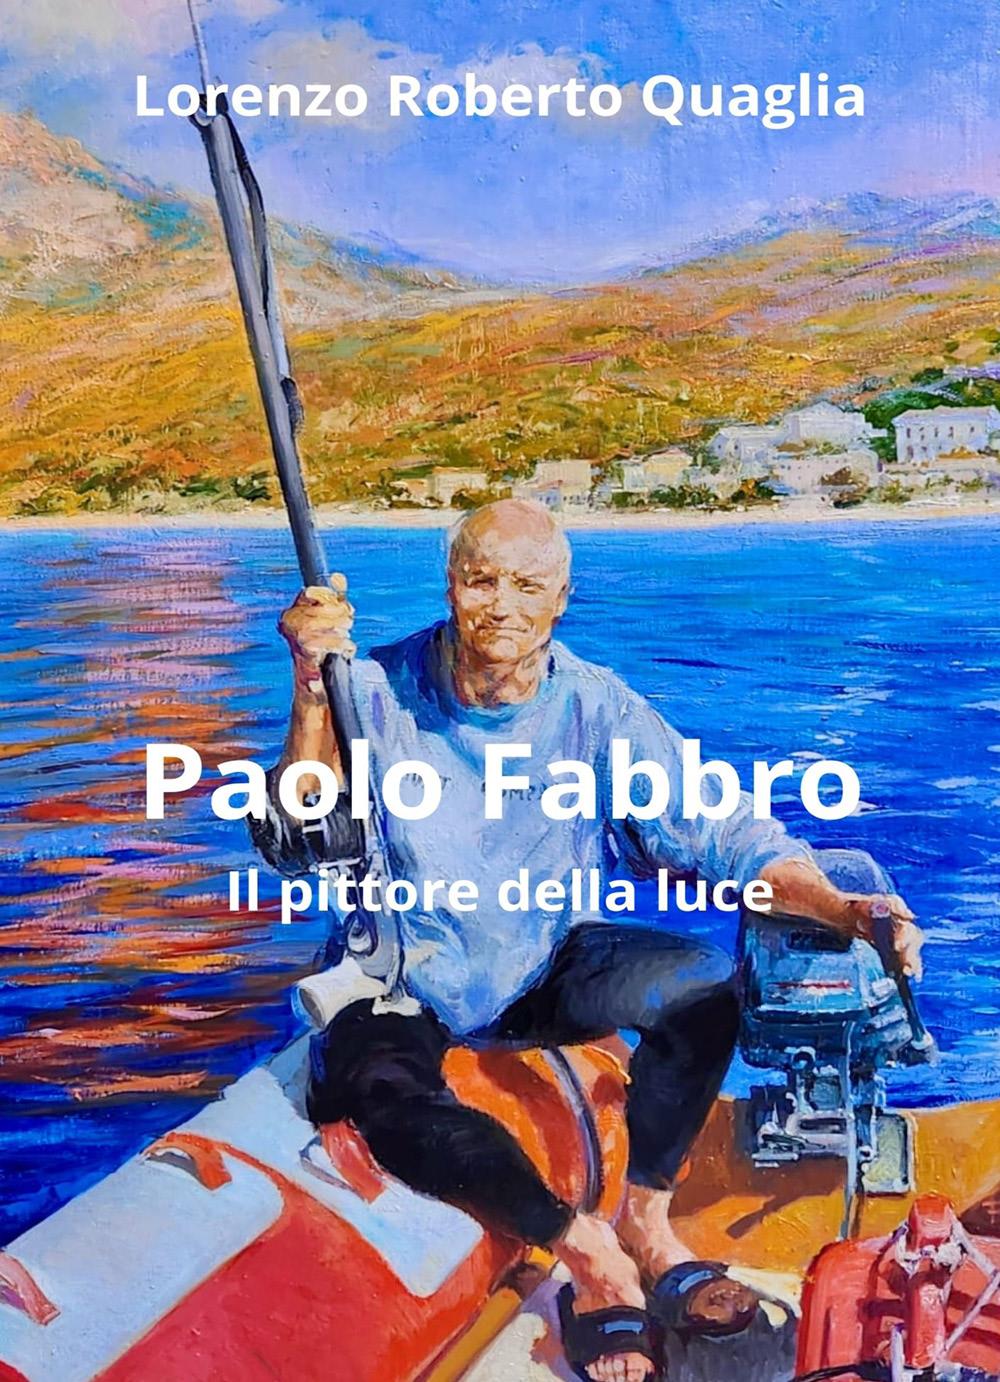 Paolo Fabbro - il pittore della luce